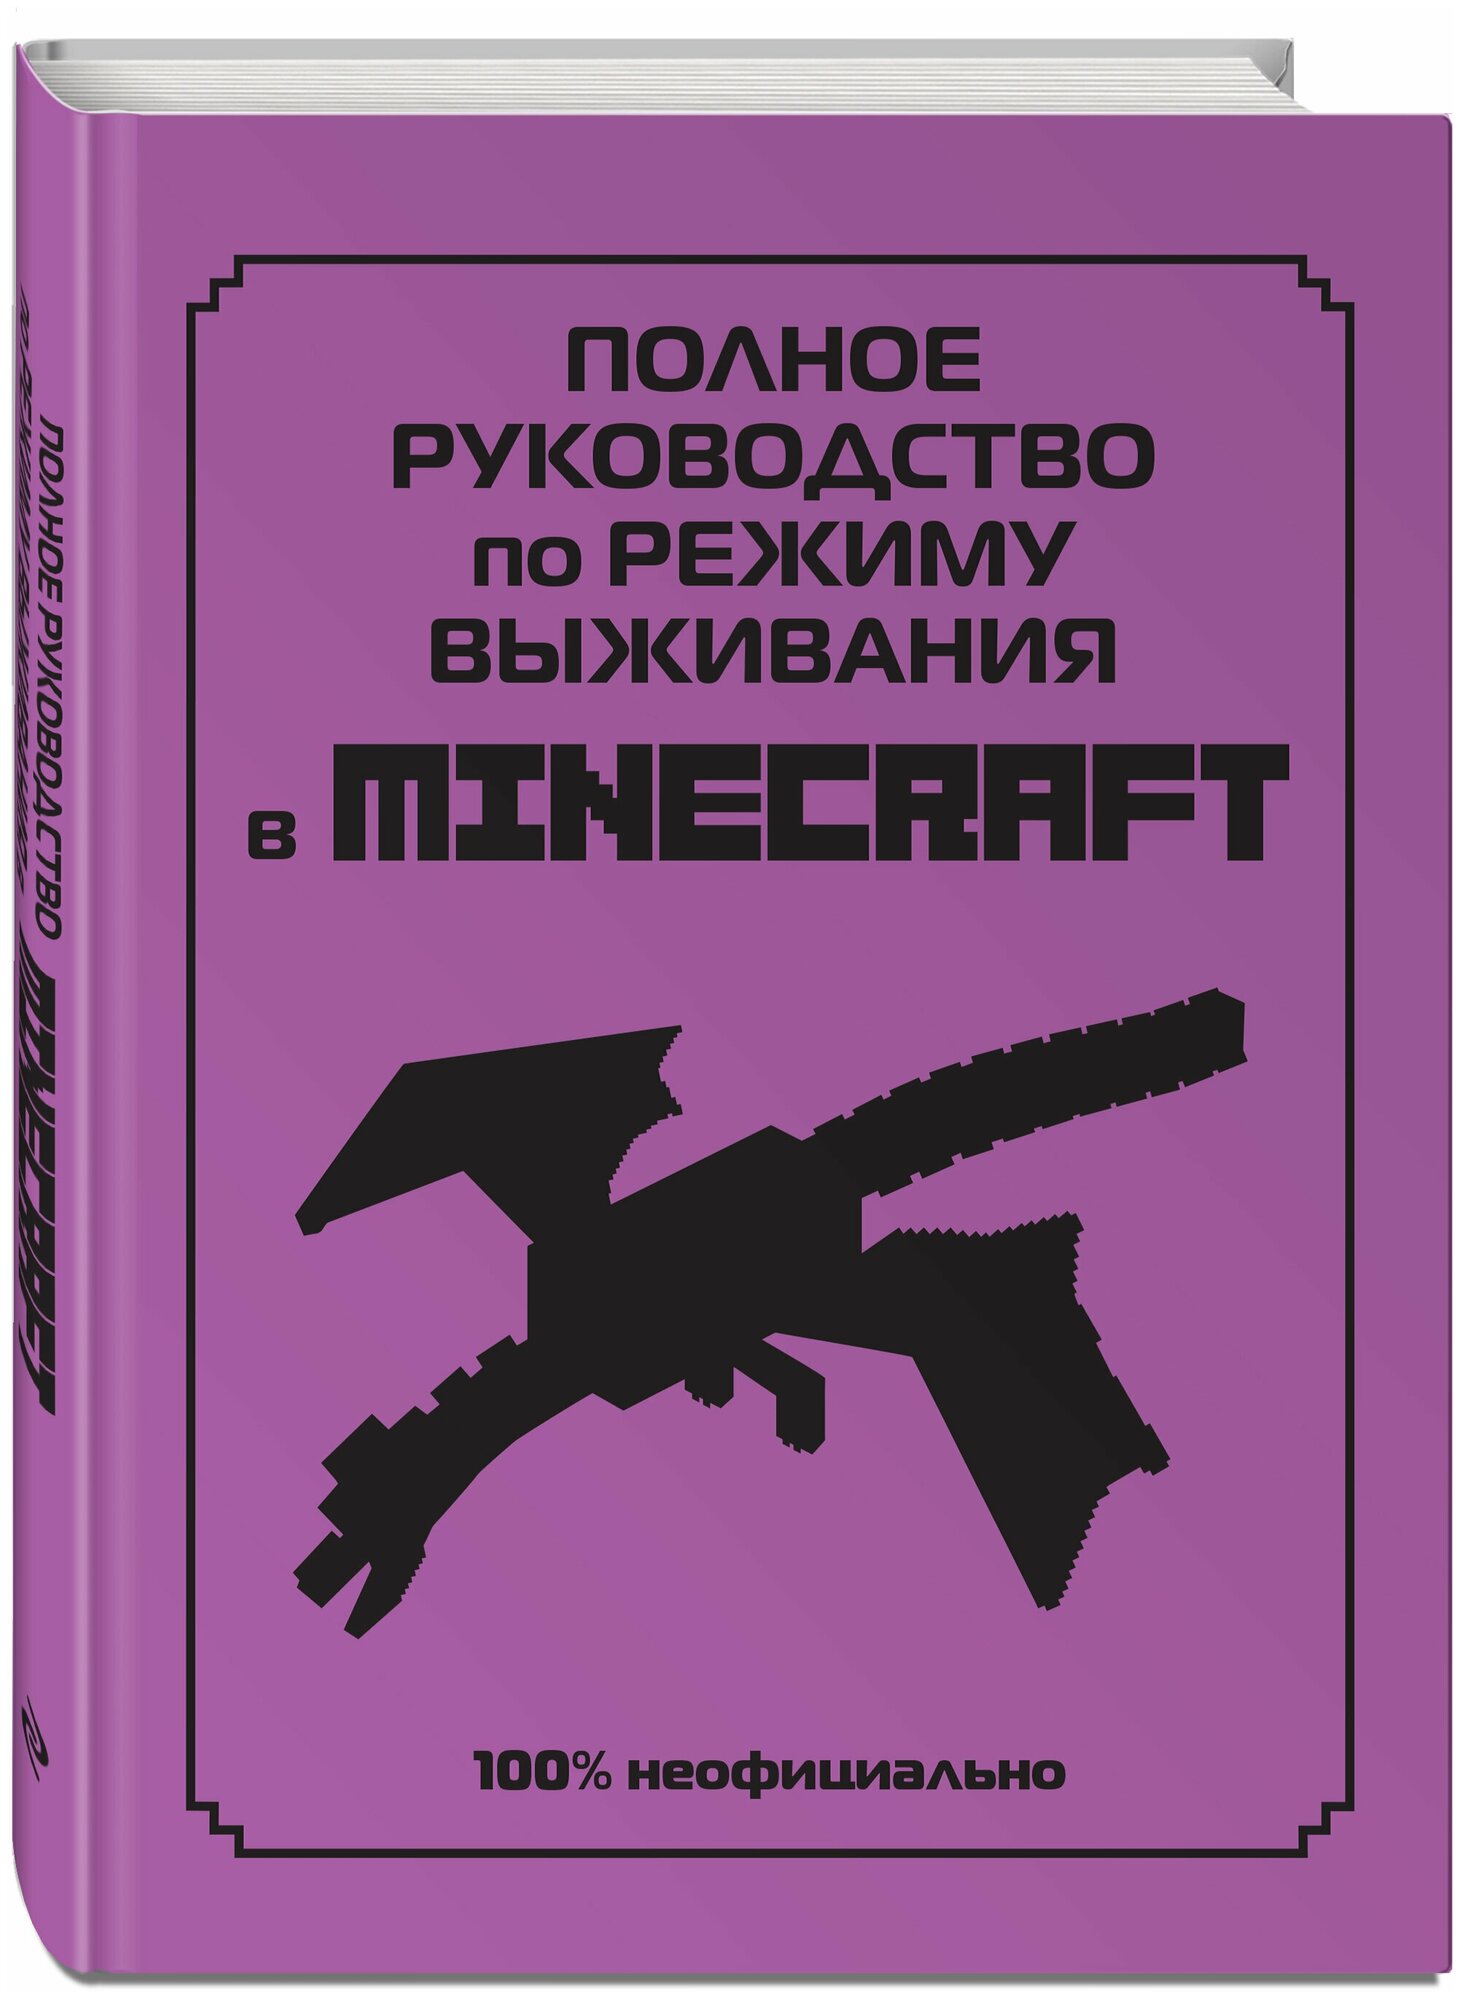 Полное руководство по режиму выживания в Minecraft - фото №11